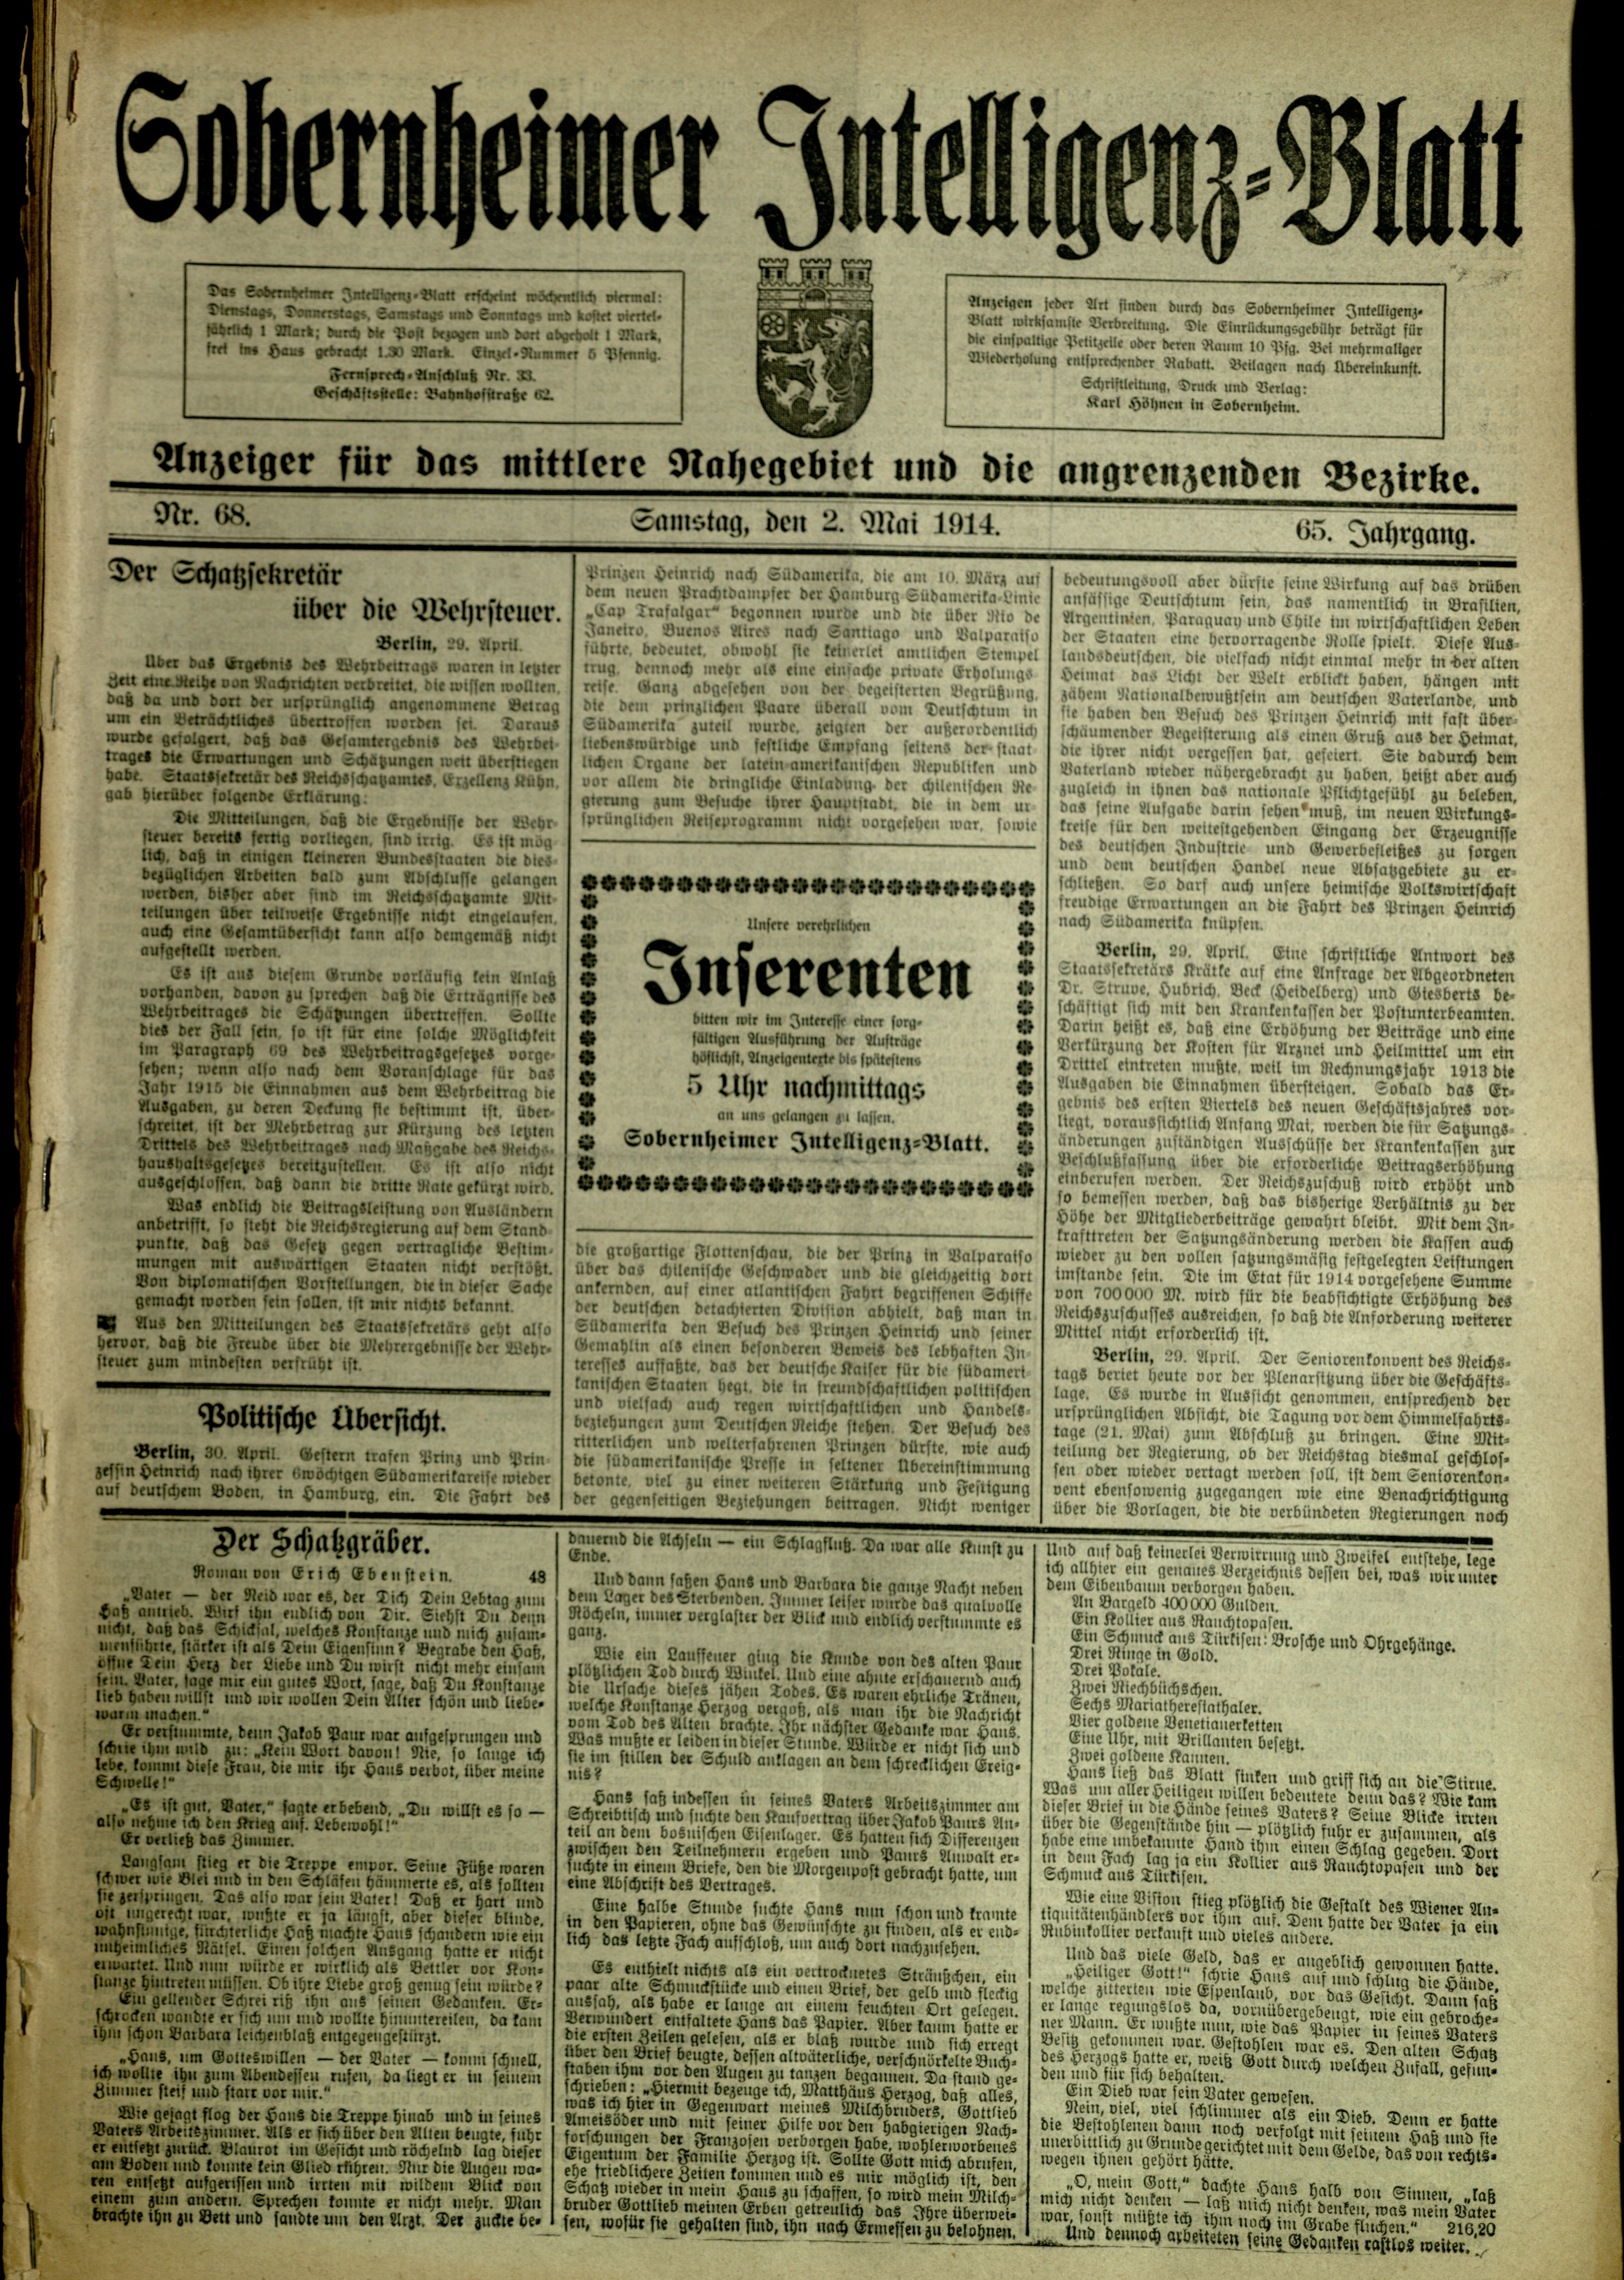 Zeitung: Sobernheimer Intelligenzblatt; Mai 1914, Jg. 65 Nr. 68 (Heimatmuseum Bad Sobernheim CC BY-NC-SA)